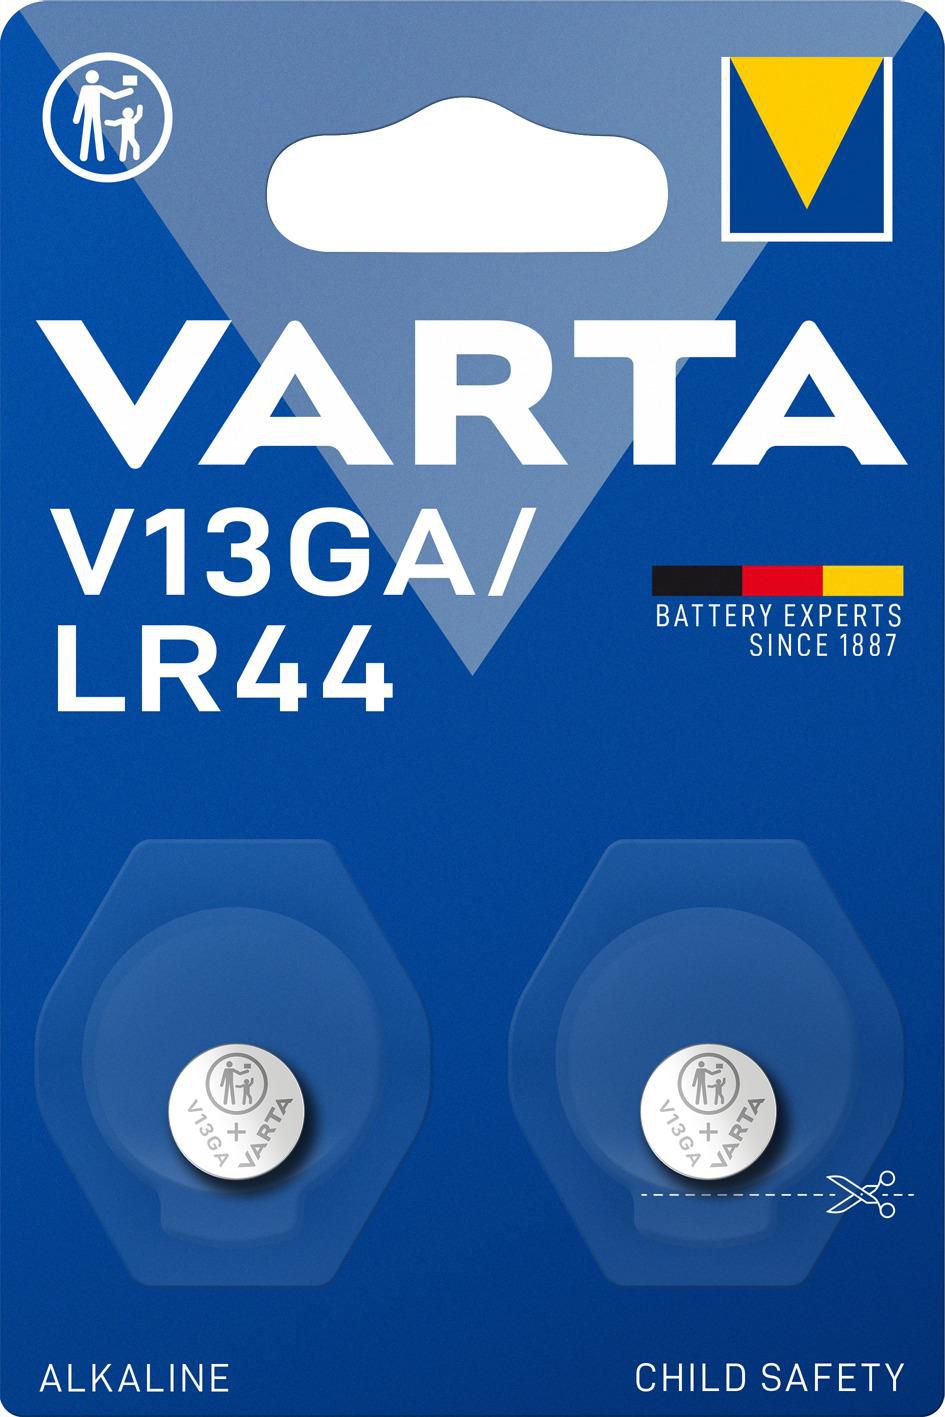 Varta 04276101402 1x2 V 13 GA 